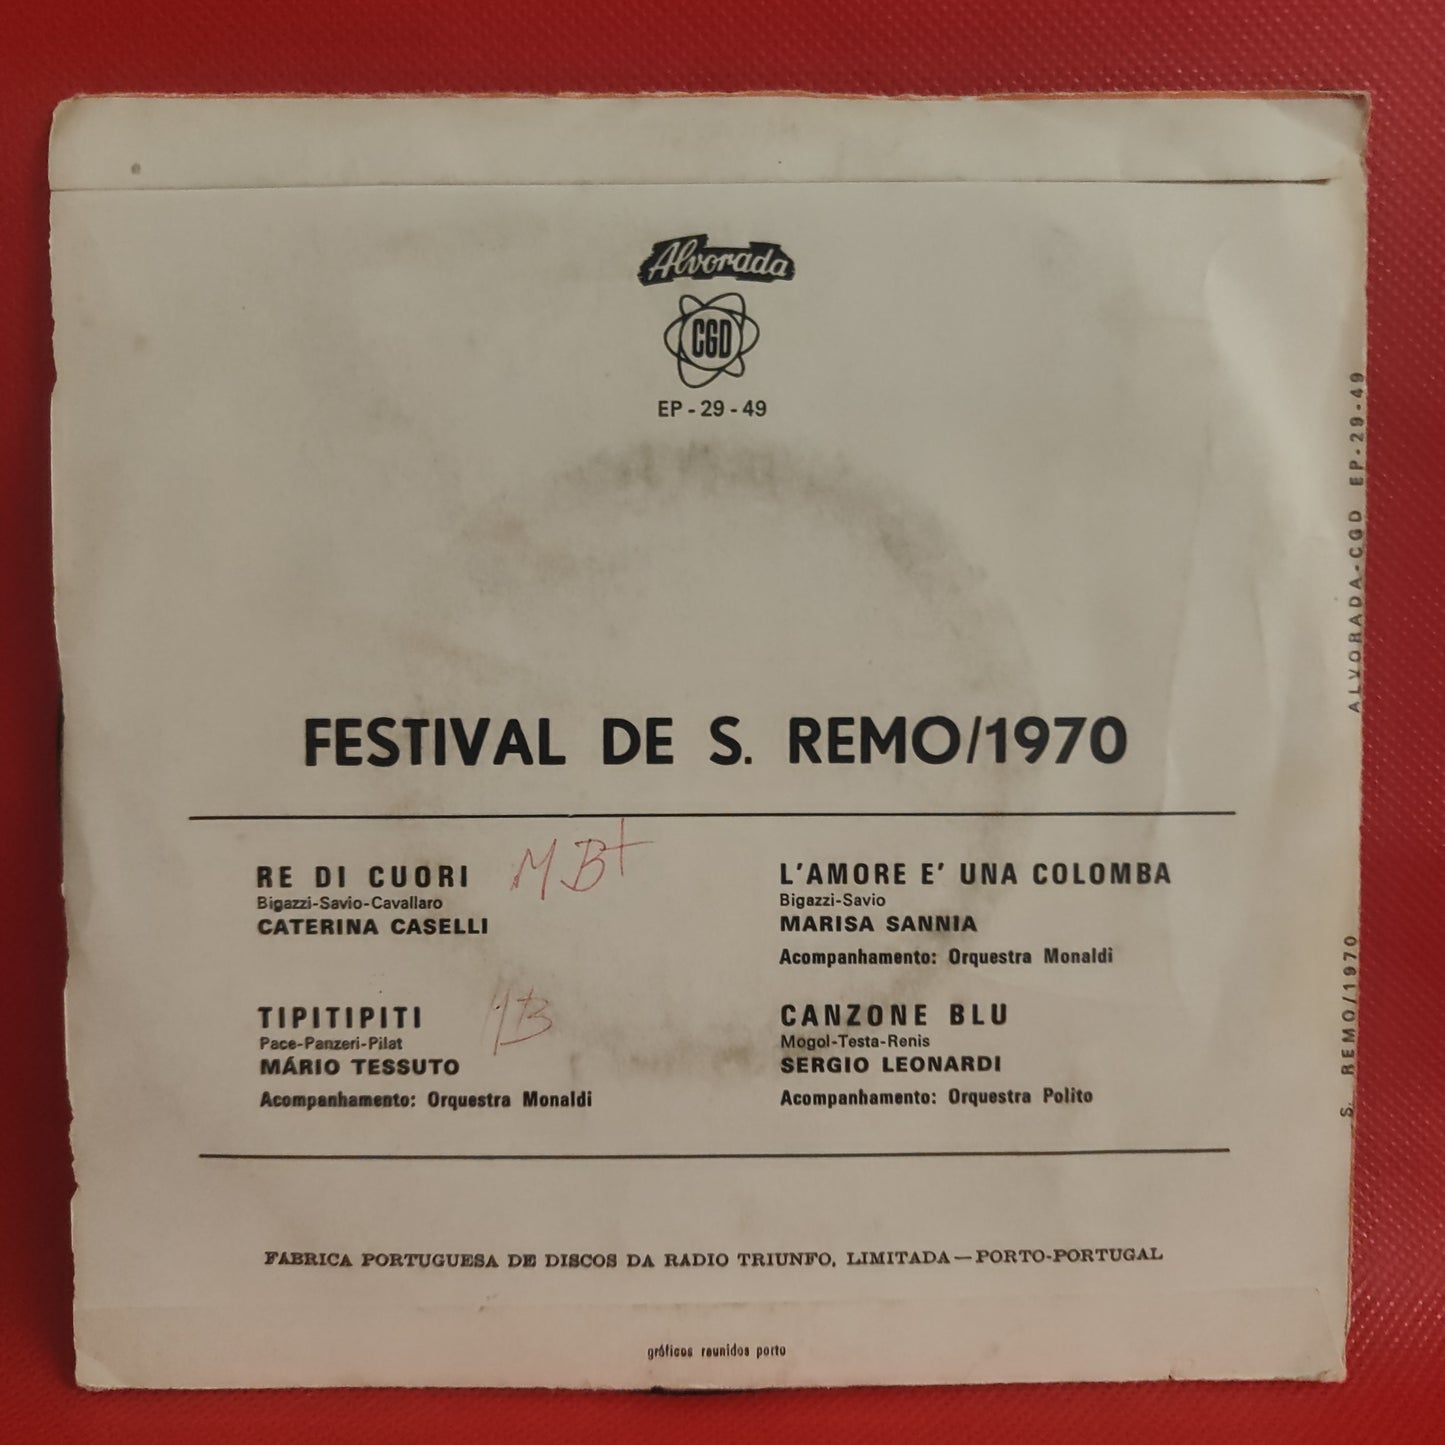 Festival de S. Remo / 1970